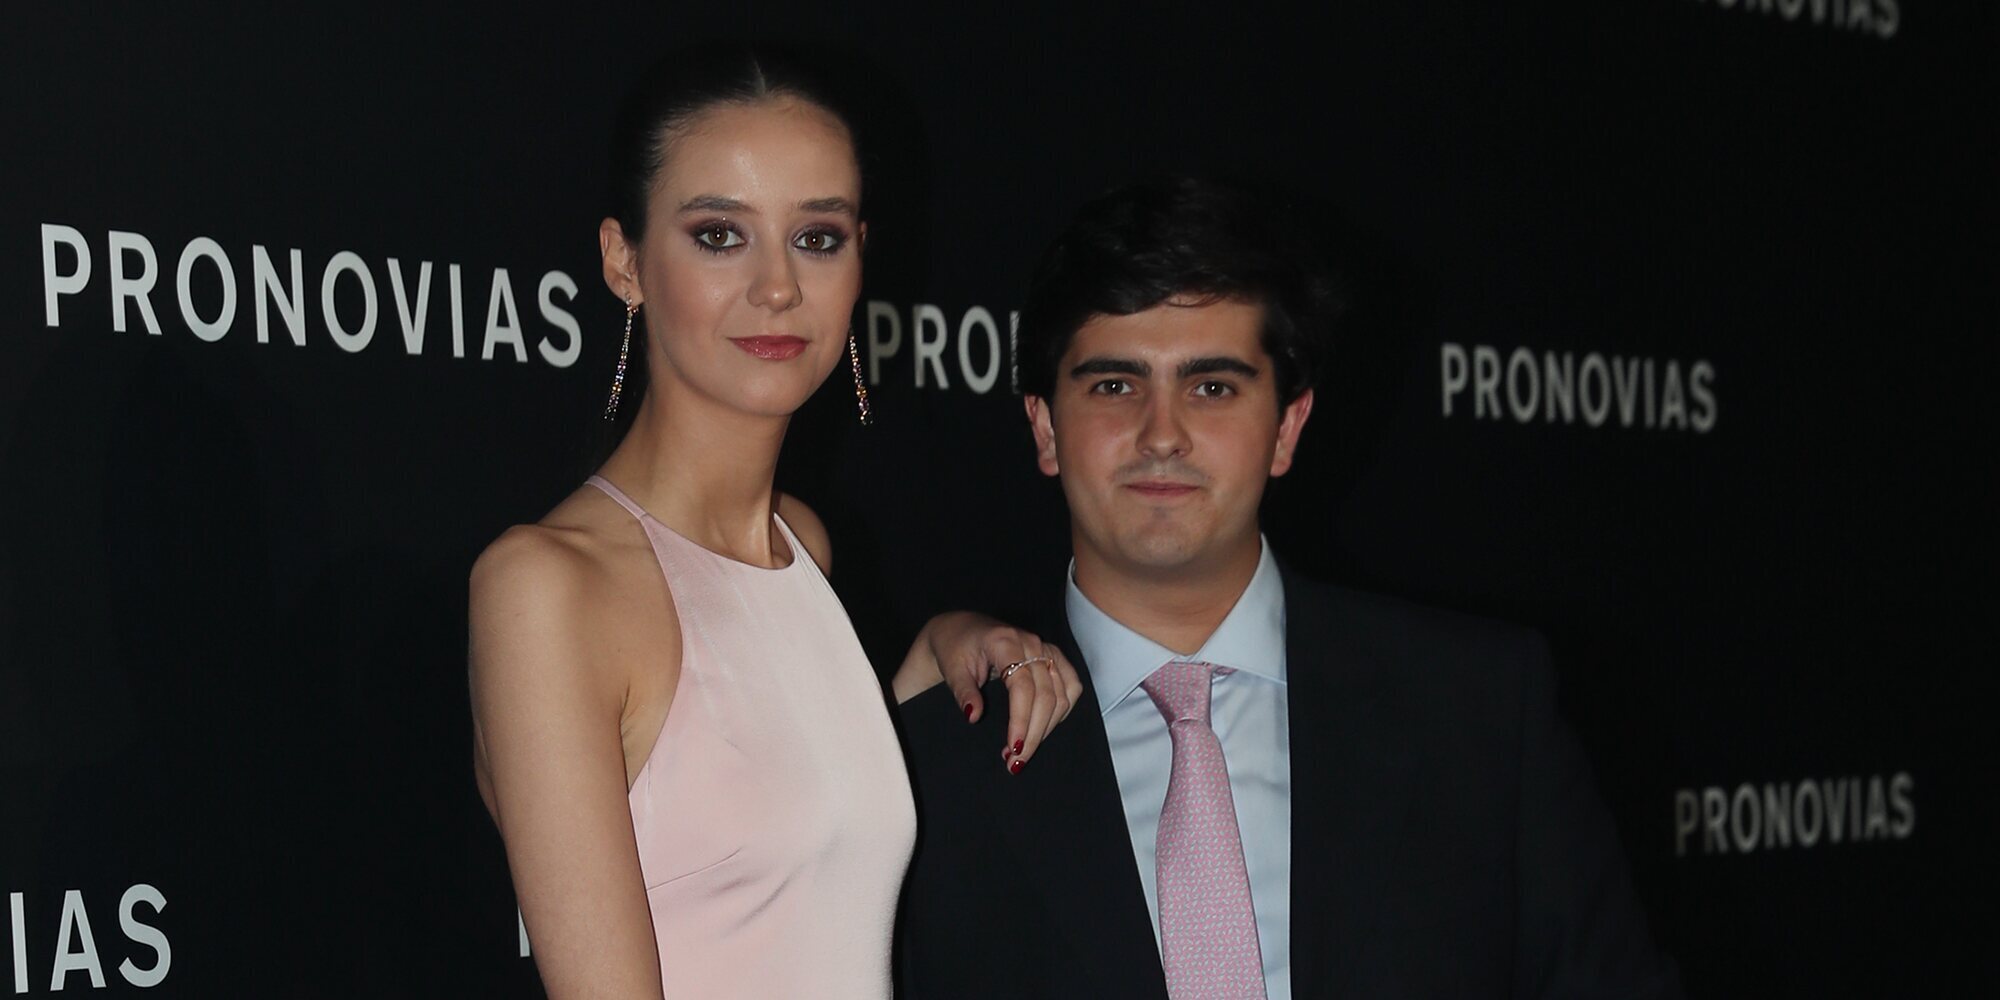 Victoria Federica y Jorge Bárcenas posan juntos en medio de rumores de crisis